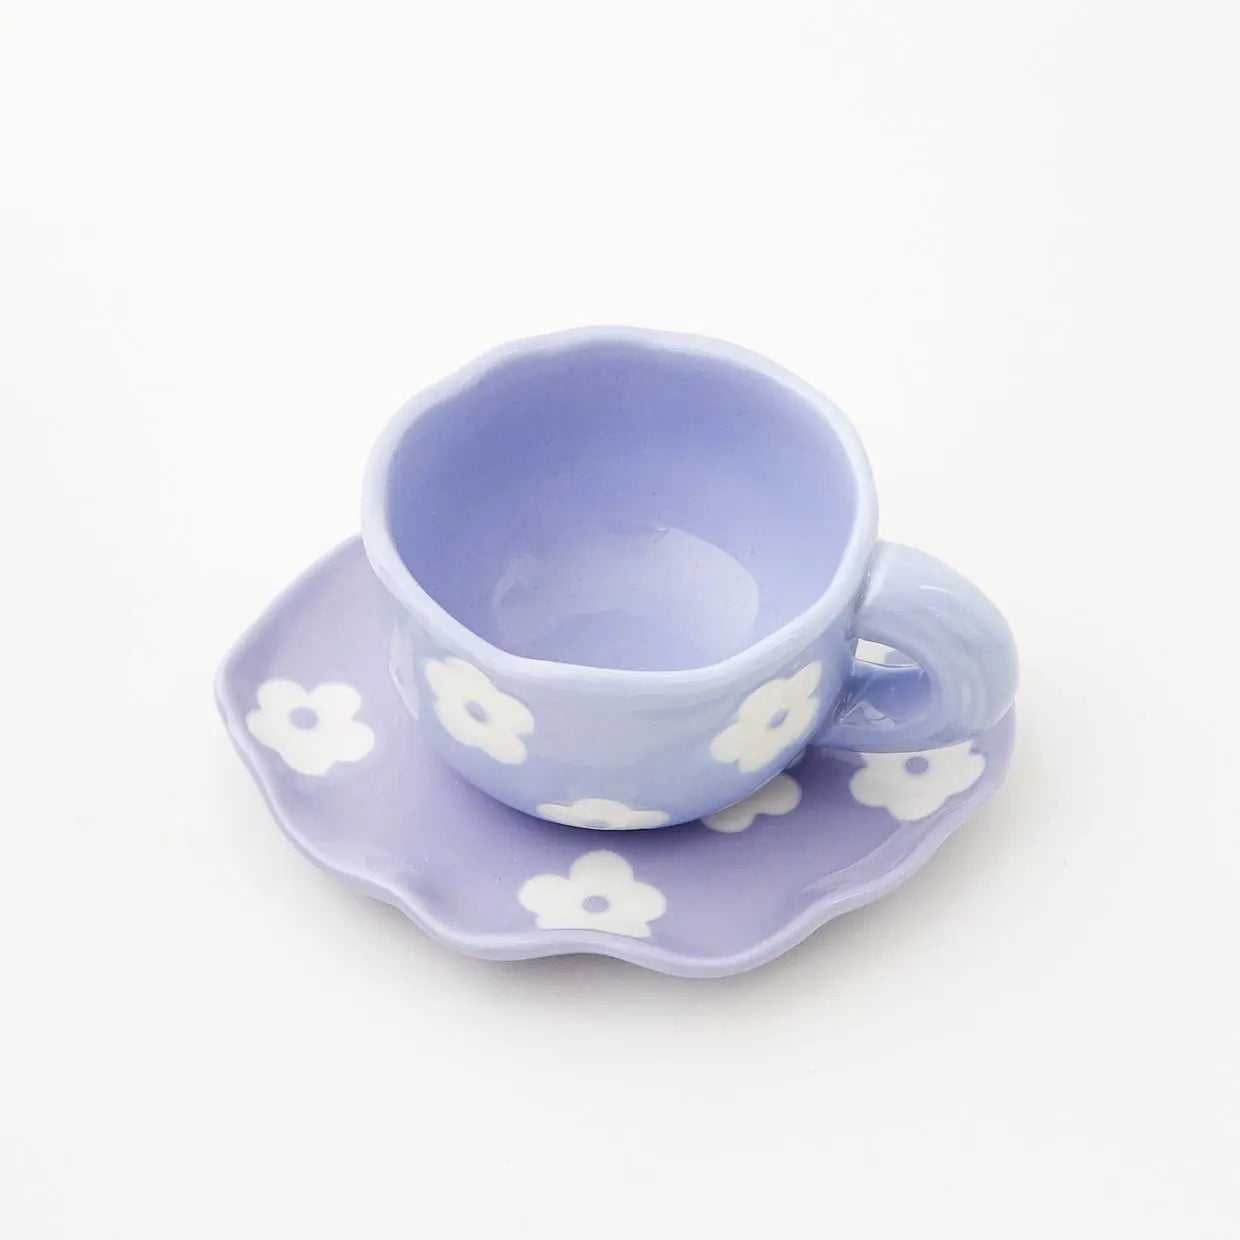 Daisy Ceramic Cup and Saucer Lilac - GigiandTom